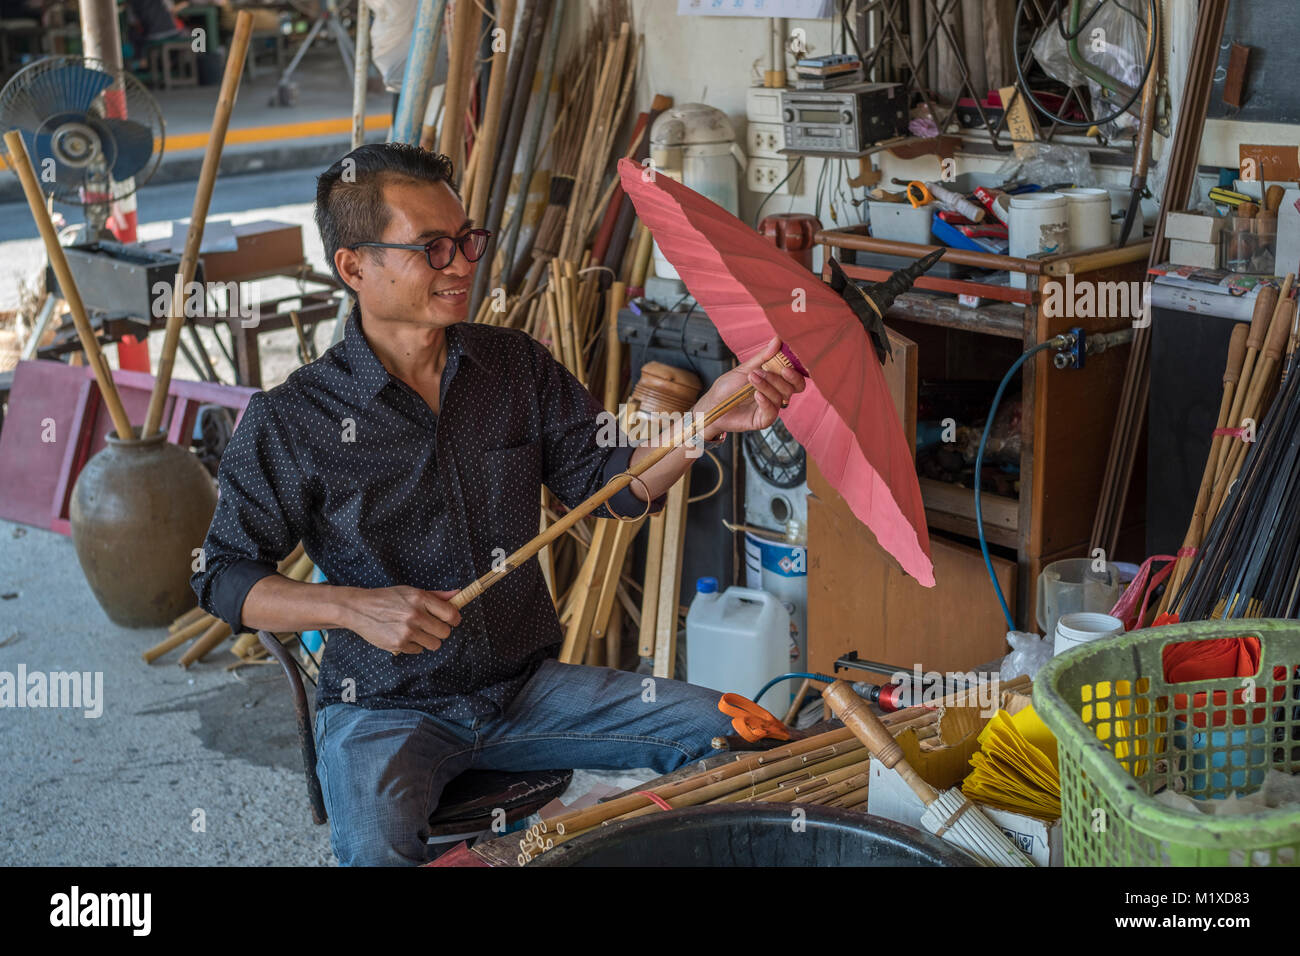 A Thai craftsman making traditional umbrella at Umbrella Making Centre in Bo Sang Handicraft Centre on San Kamphaeng Road, Chiang Mai, Thailand. Stock Photo